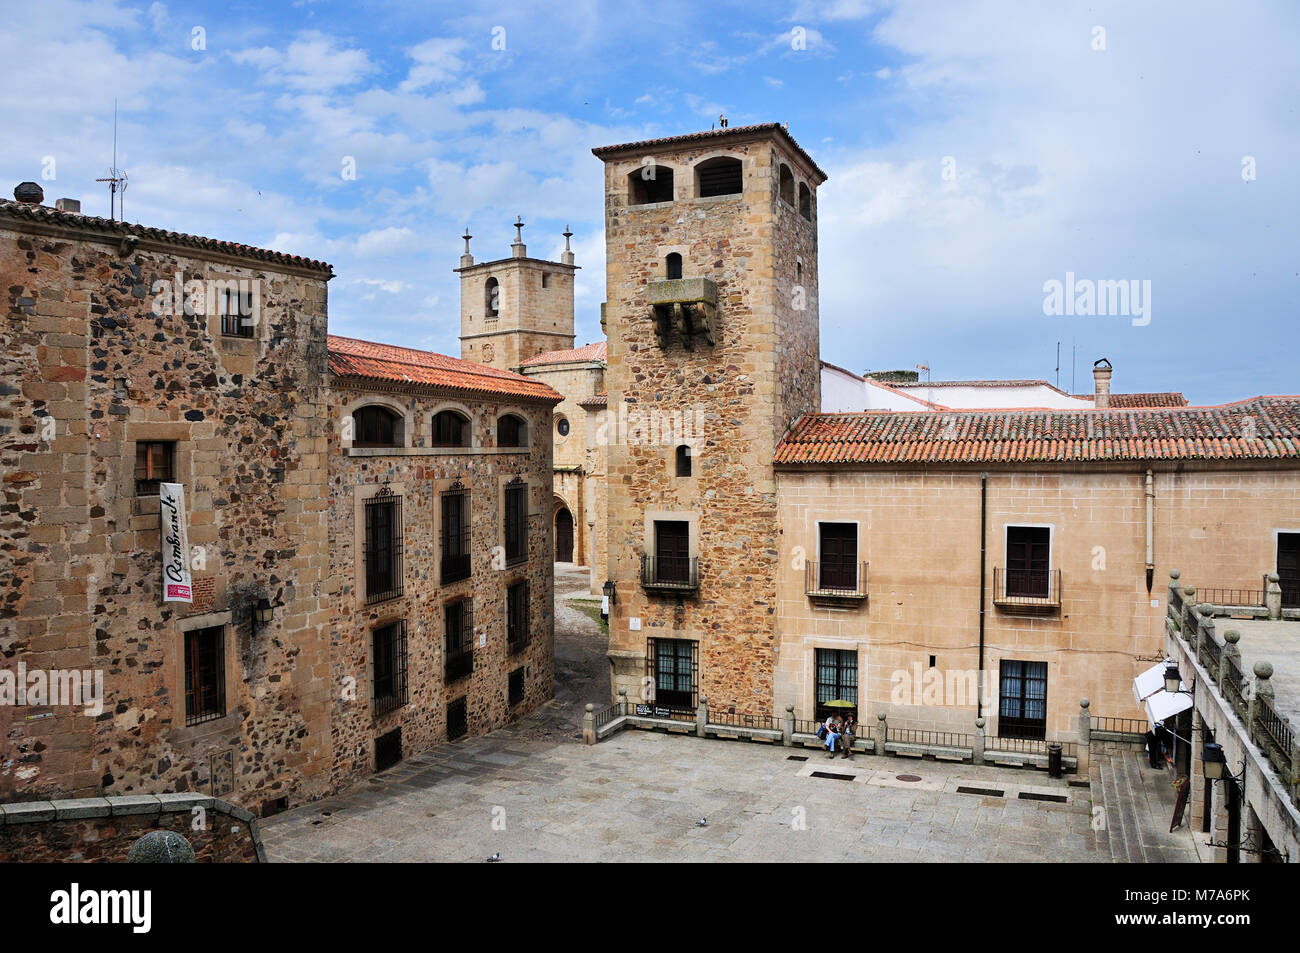 Cáceres, Site du patrimoine mondial de l'UNESCO. Espagne Banque D'Images